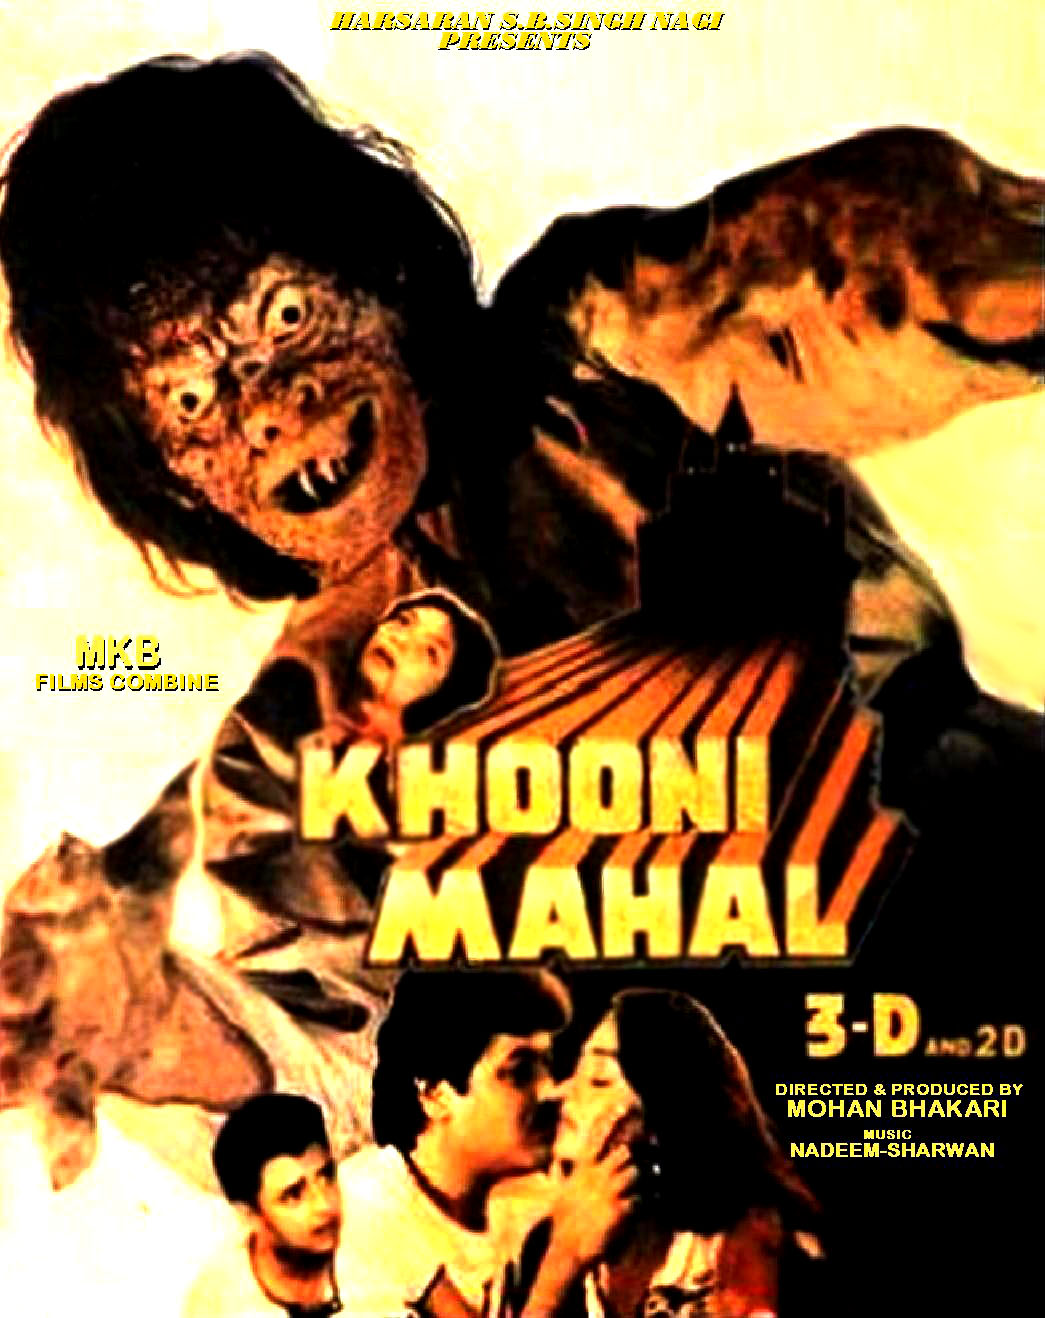 Khooni Mahal (1987) Screenshot 3 